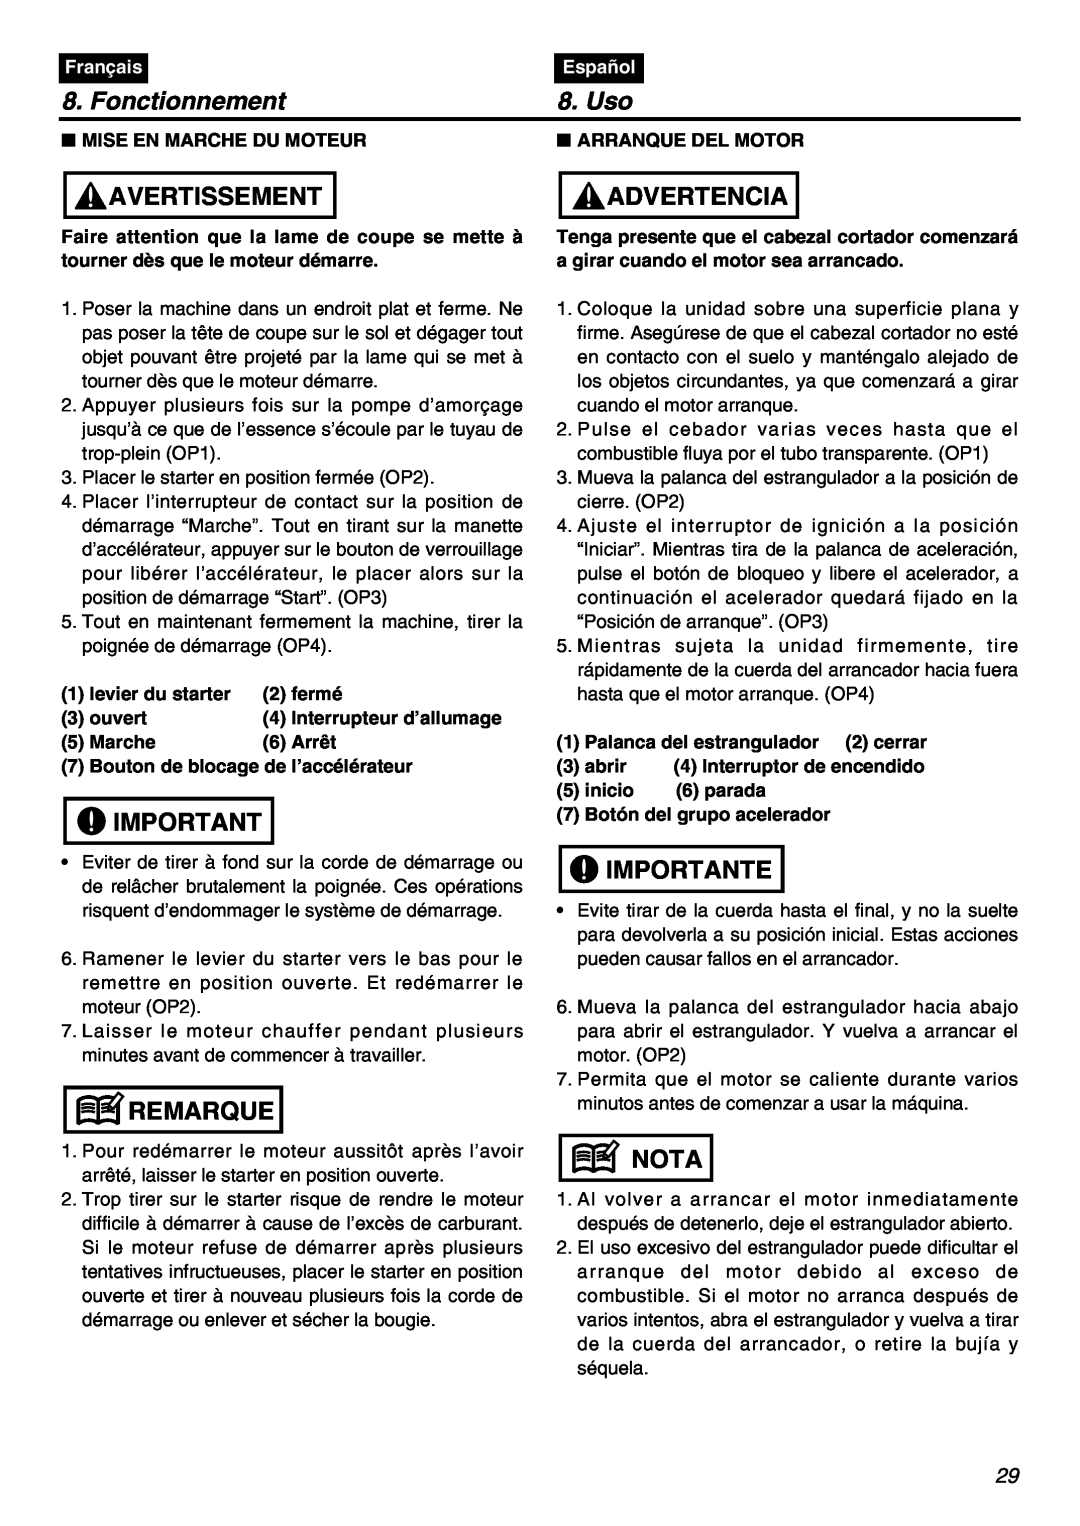 Univex SRTZ2401-CA manual Fonctionnement, Uso, Avertissement, Advertencia, Remarque, Importante, Nota, Français, Español 